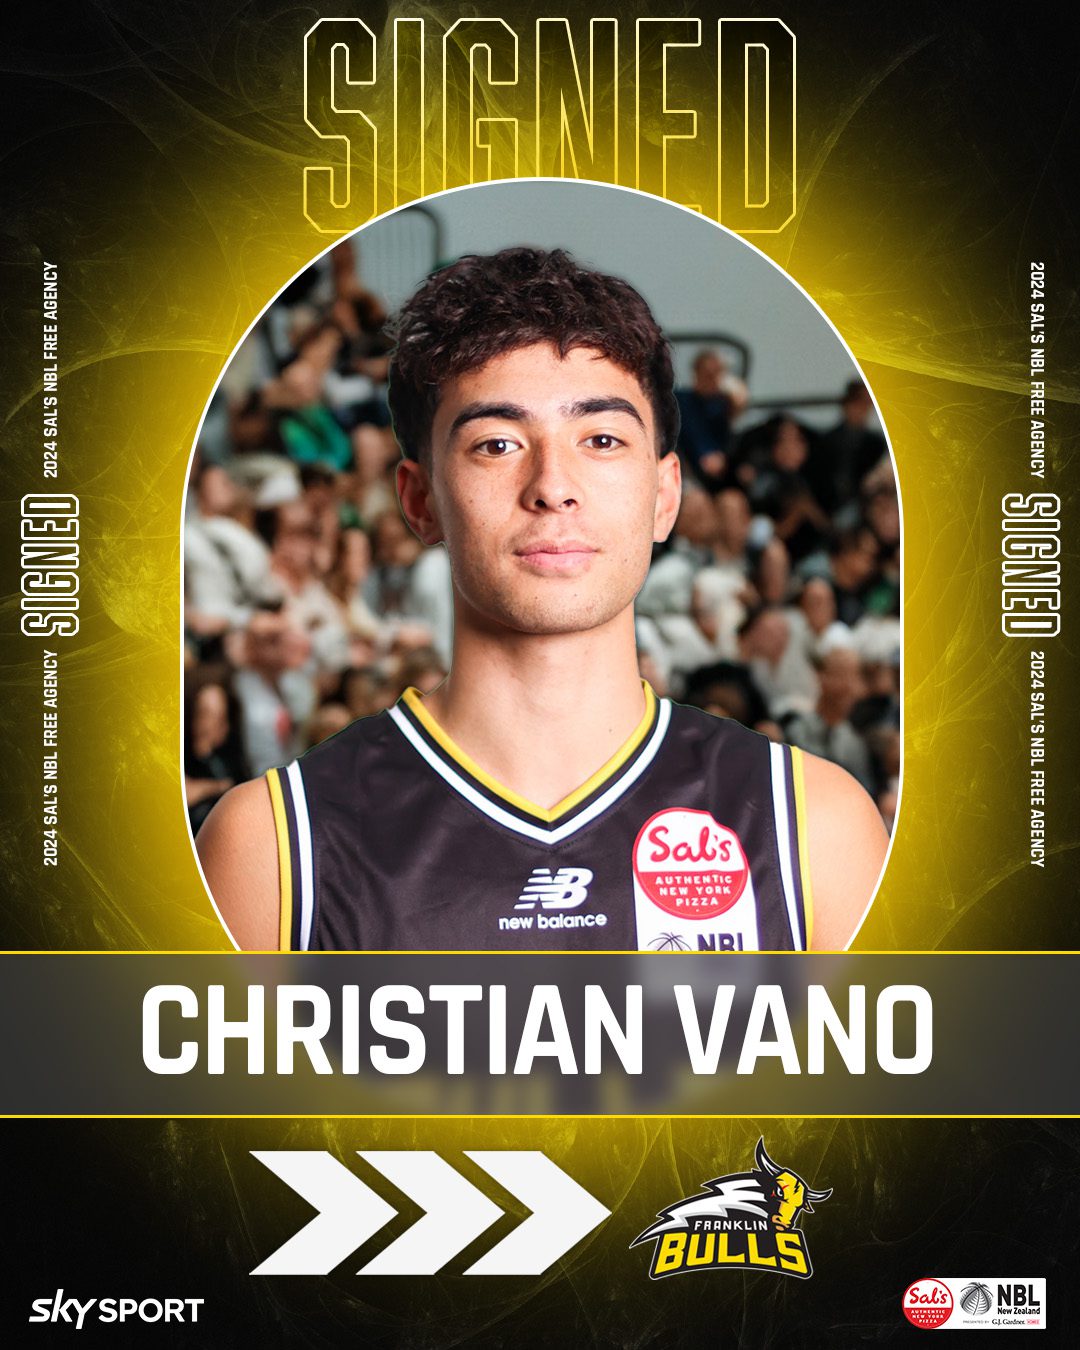 Christian Vano